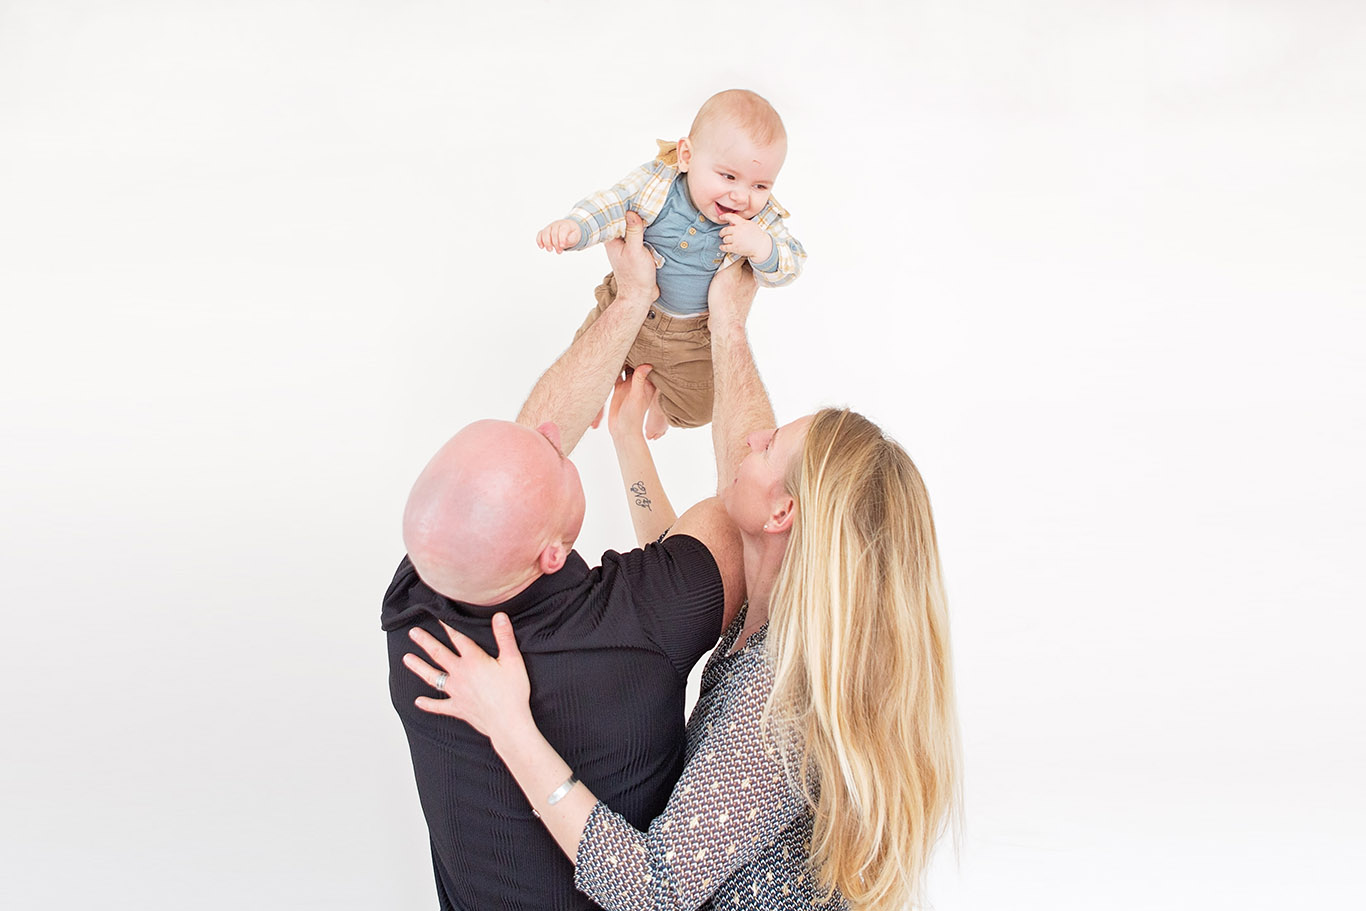 séance photo en famille avec bébé de 6 mois en studio Aurélie Coquan Photographe